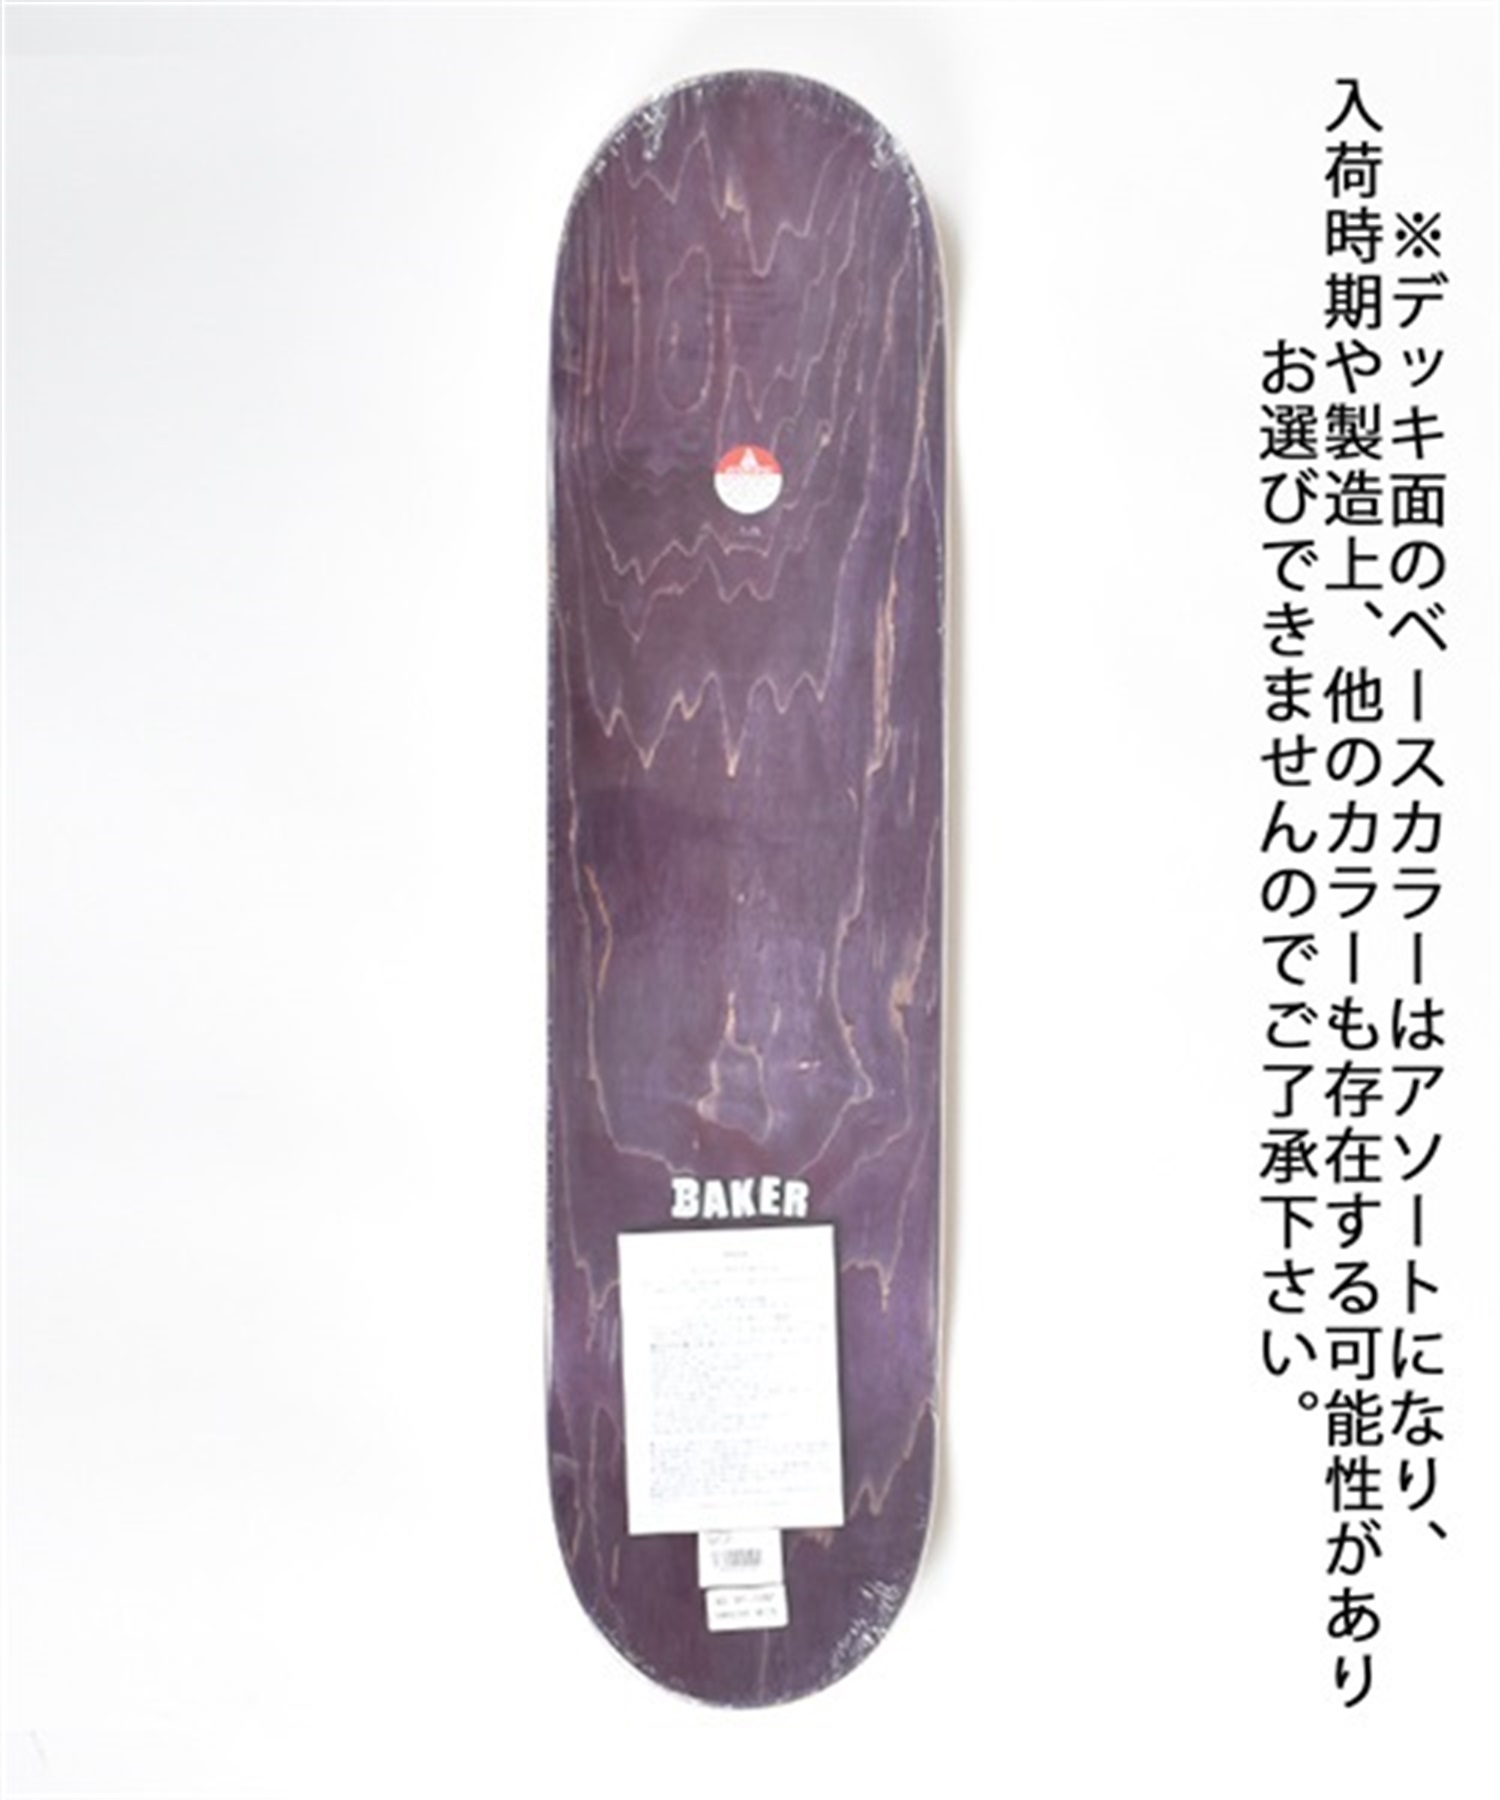 スケートボード デッキ BAKER ベイカー 03-01-1792 BRAND LOGO TAN